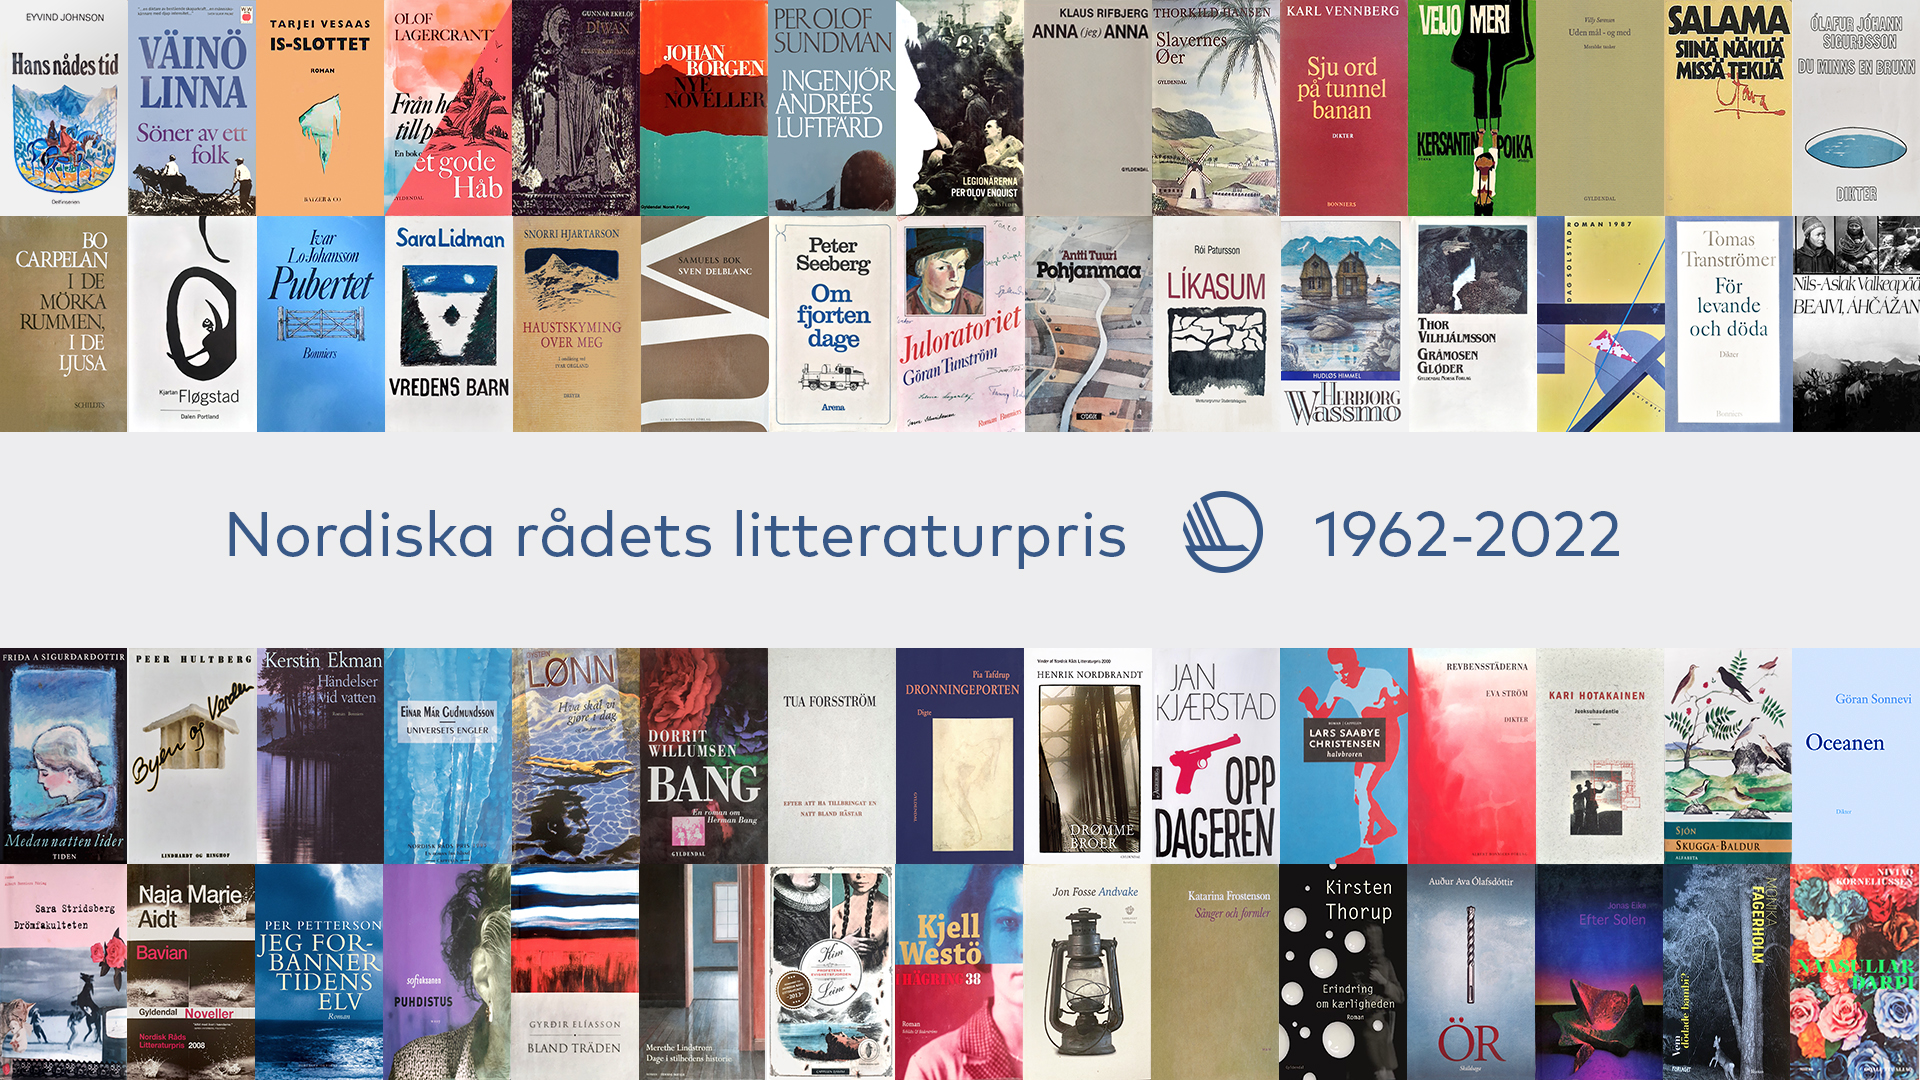 Højdepunkter i Nordisk Råds litteraturpris 60-årige historie.